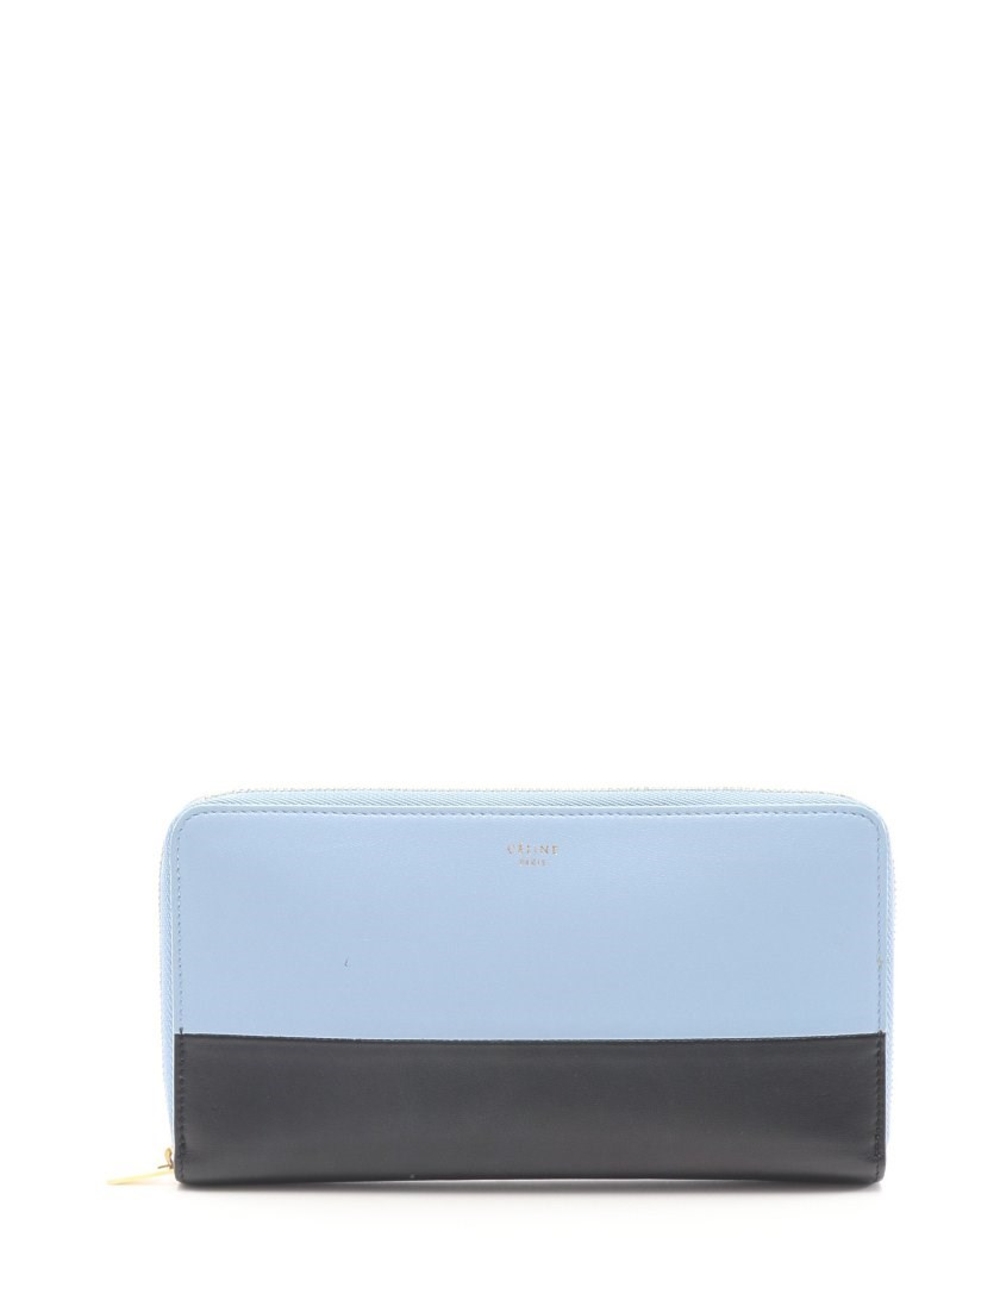 材質：皮革 顏色：淺藍色海軍 垂直：10.5 寬度：19.5 厚度：2 產品規格：內部：開放式口袋×2，名片盒×12，錢包×2，錢包×1 配件：盒 型號：102623 ※長度單位為厘米，重量單位為克 